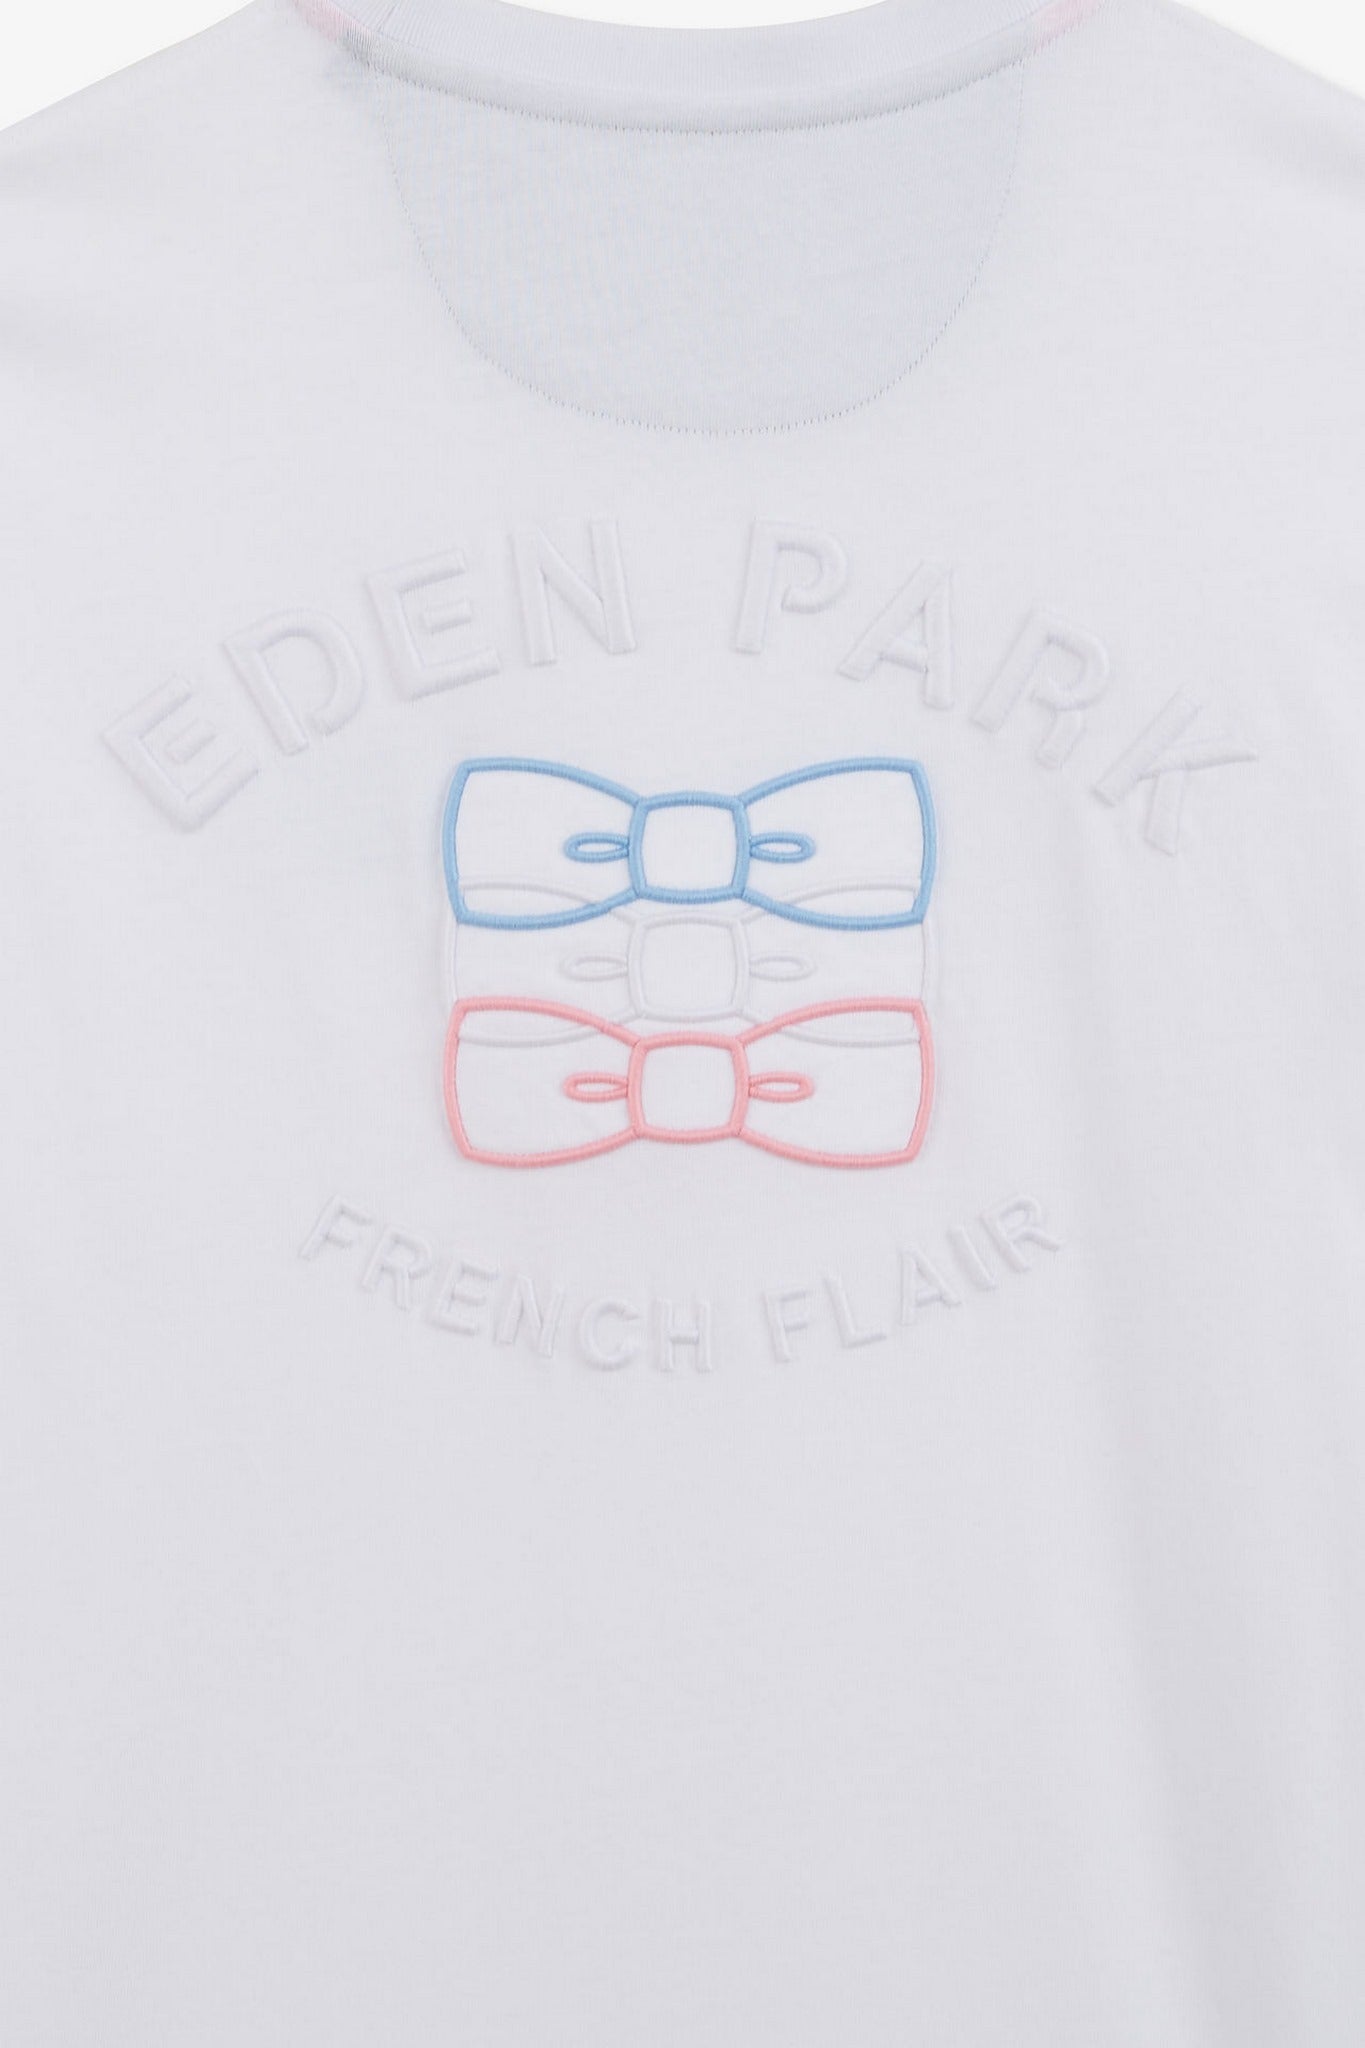 T-shirt manches courtes blanc avec logo reliefé - Image 8